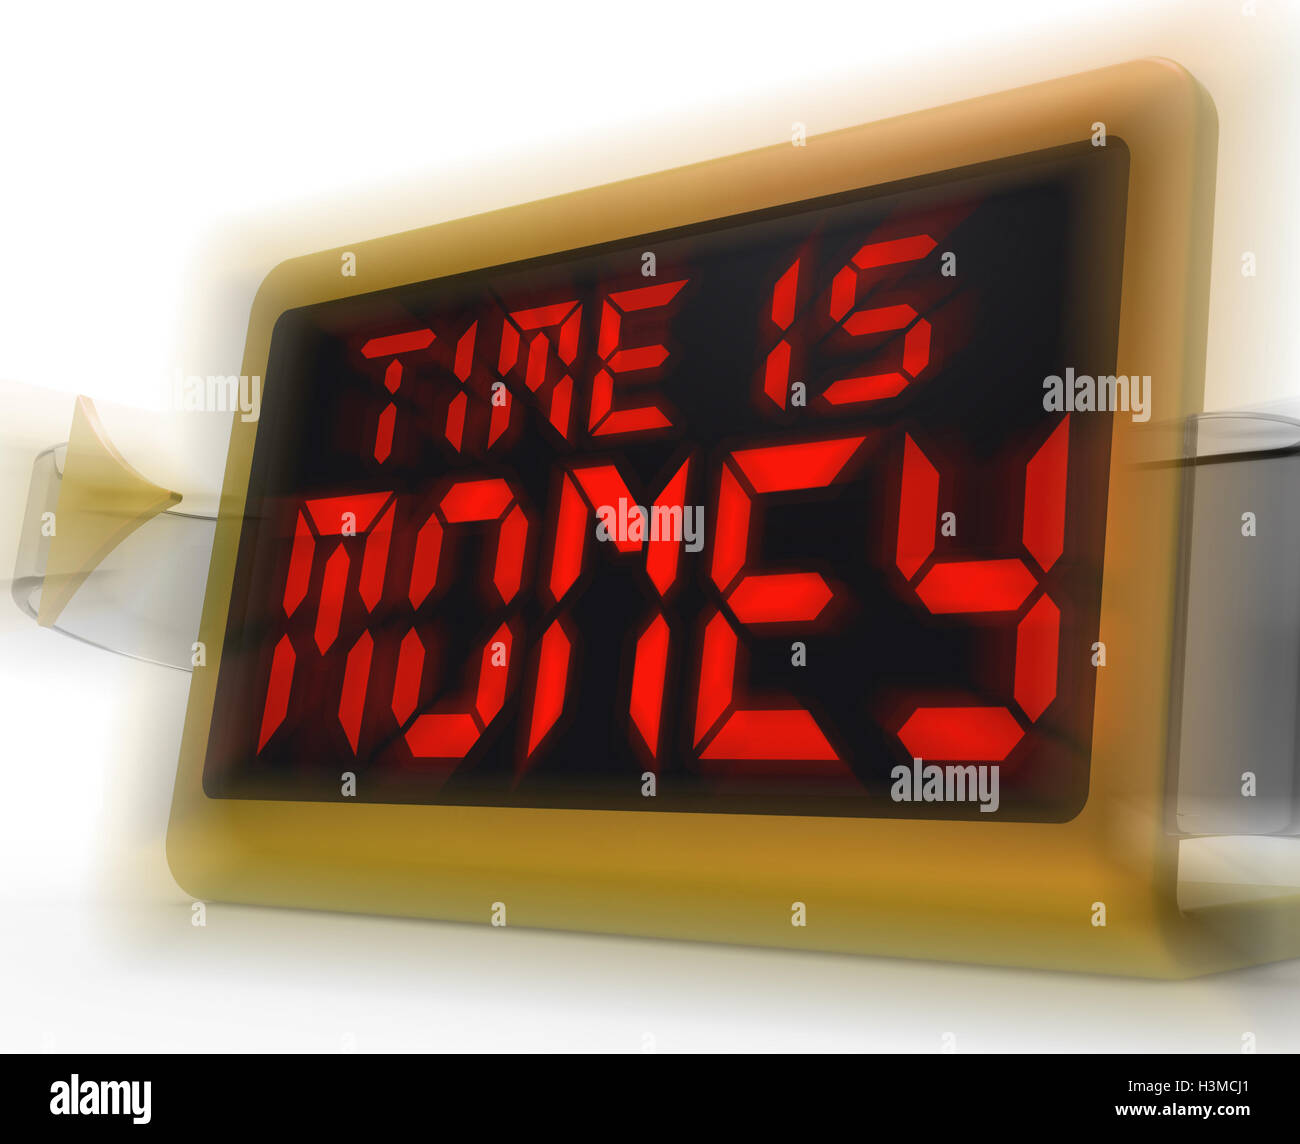 El tiempo es dinero el Reloj digital muestra valiosas e importantes recur Foto de stock